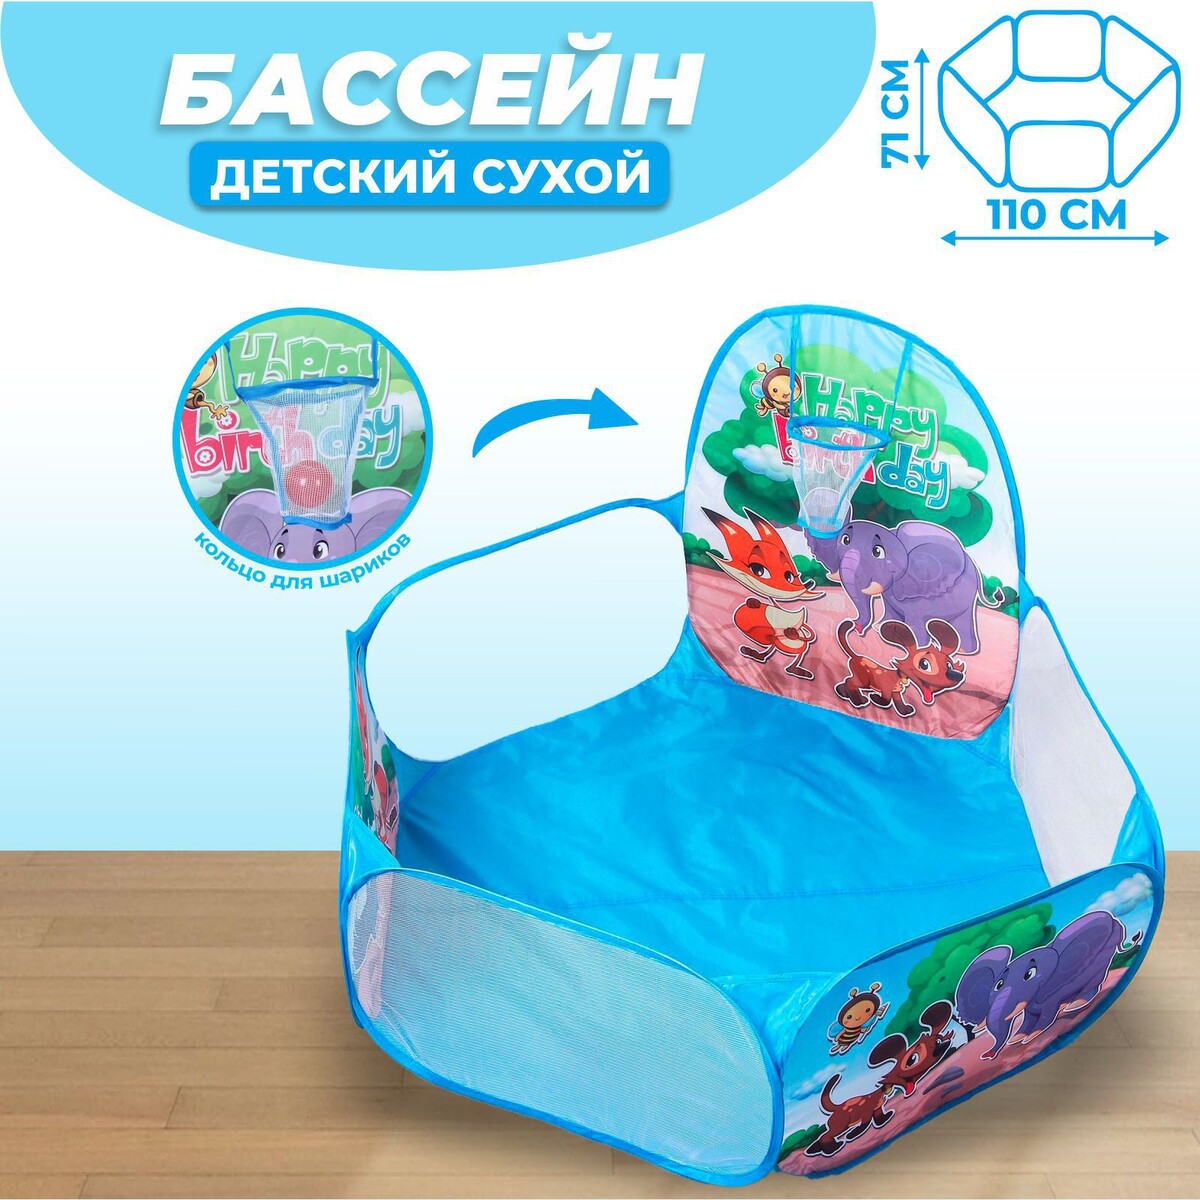 Палатка детская игровая - сухой бассейн для шариков сухой бассейн для шариков школа талантов милая принцесса